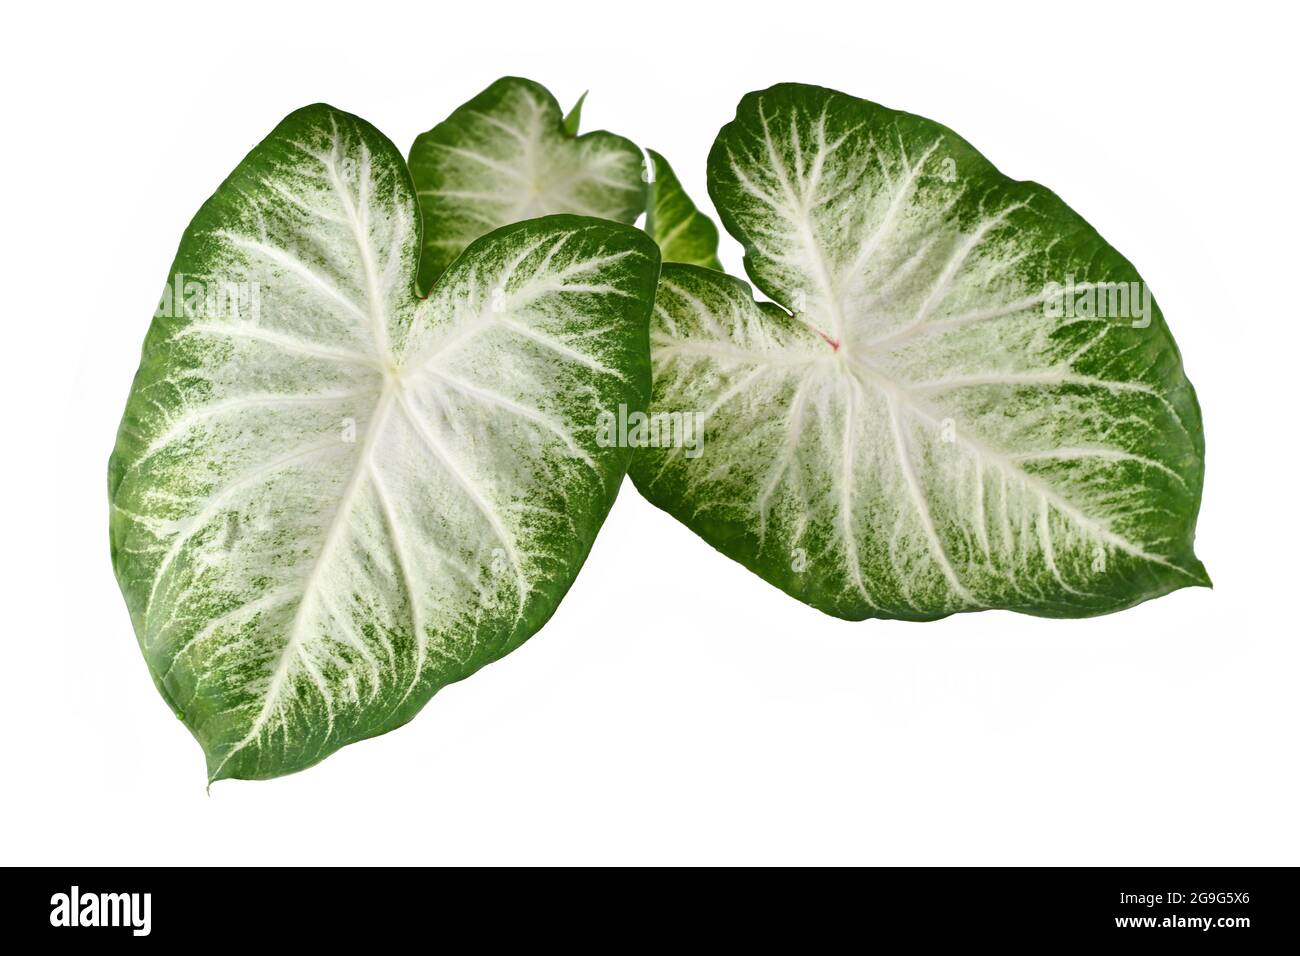 Draufsicht auf die exotische 'Caladium Aaron'-Zimmerpflanze mit großen weißen und grünen Blättern, isoliert auf weißem Hintergrund Stockfoto